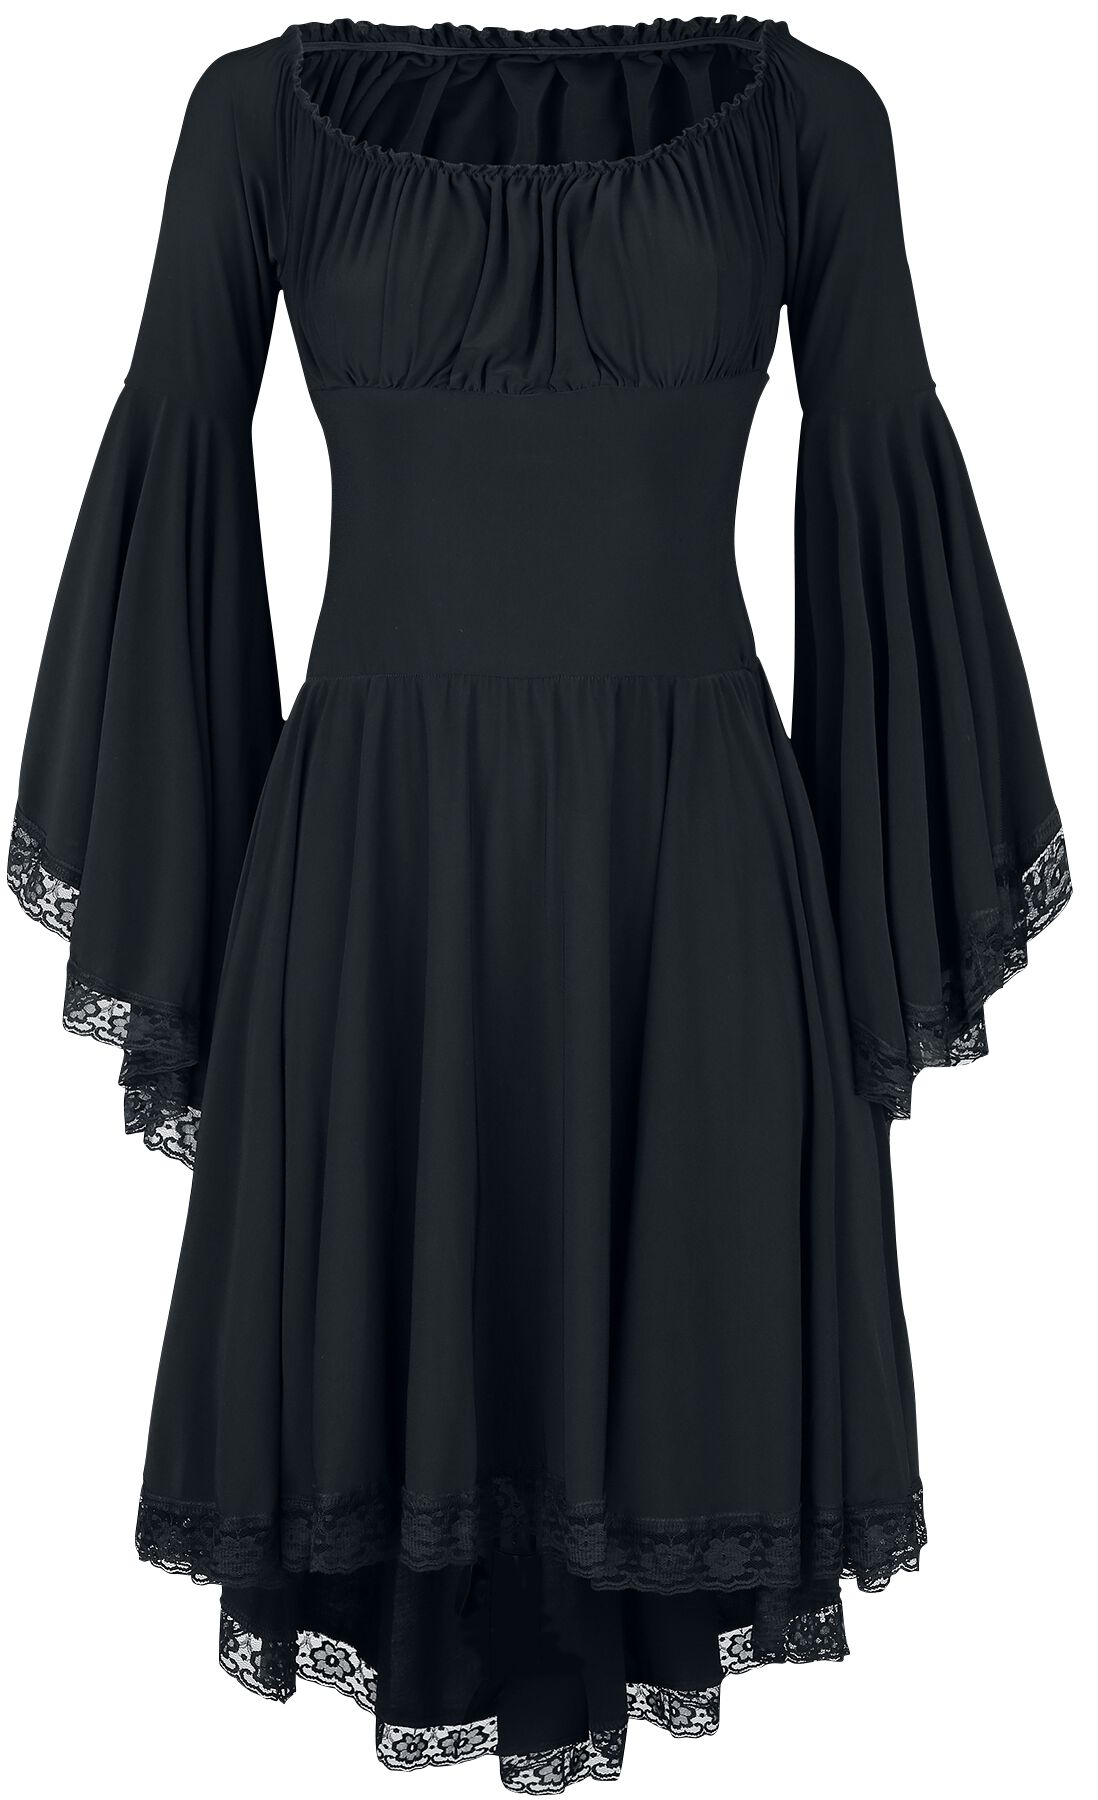 Ocultica - Mittelalter Kleid knielang - Jerseykleid - XS bis 3XL - für Damen - Größe 3XL - schwarz